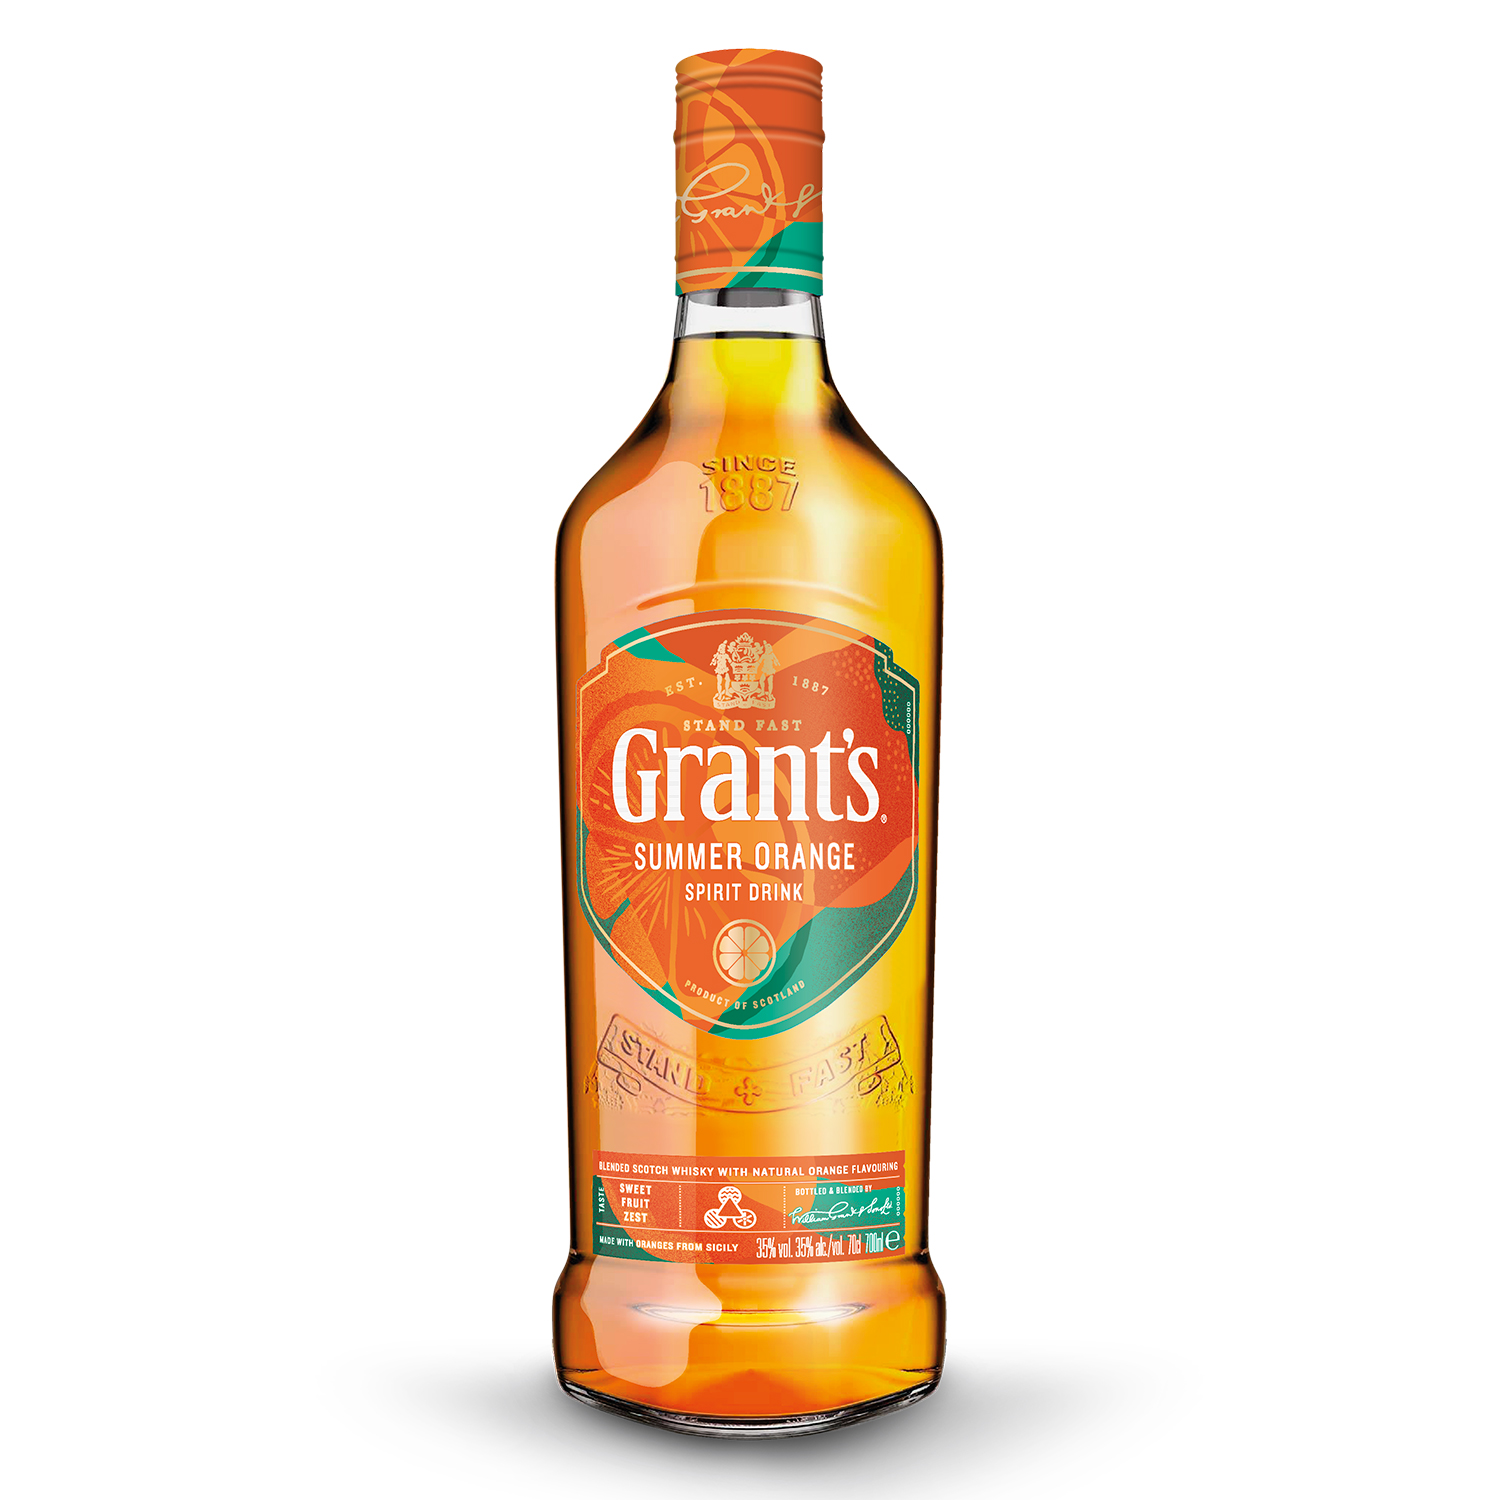 Grant’s - Summer Orange